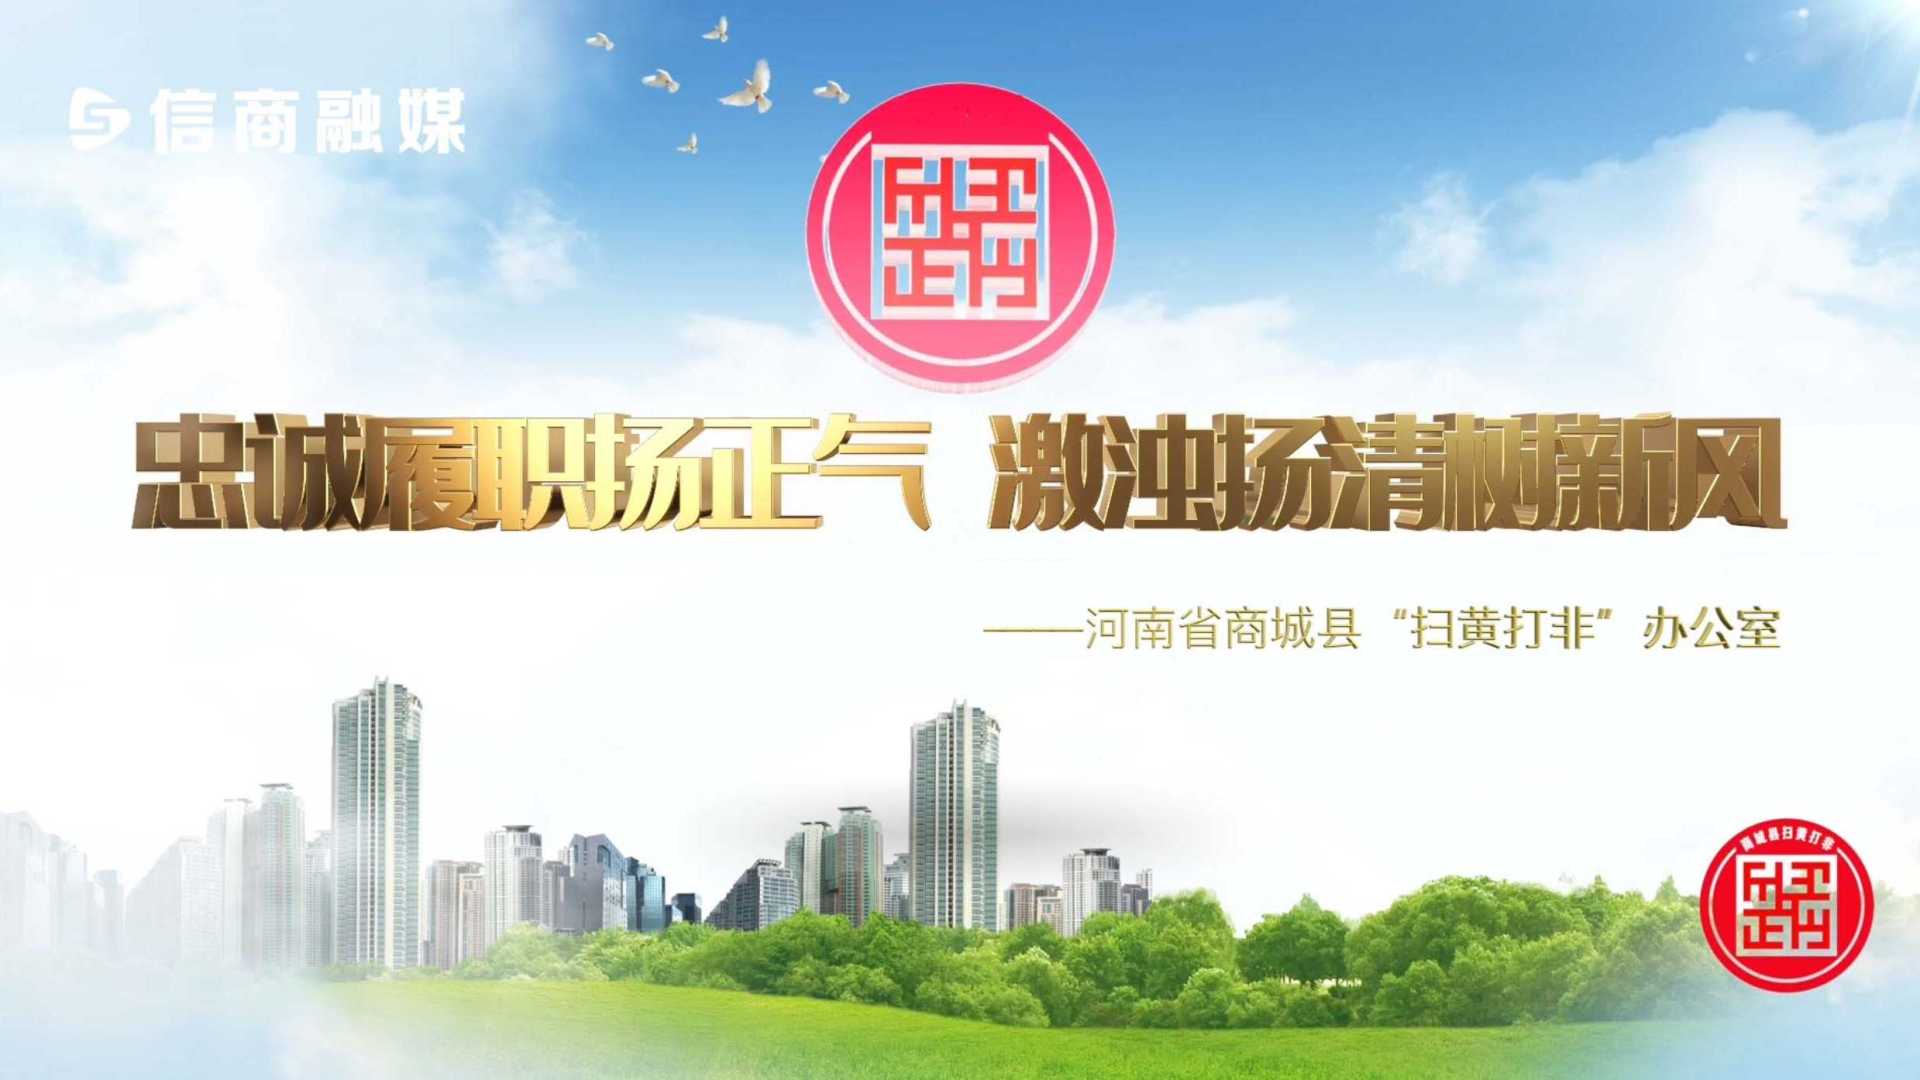 商城县委宣传部“扫黄打非”专题片——2022